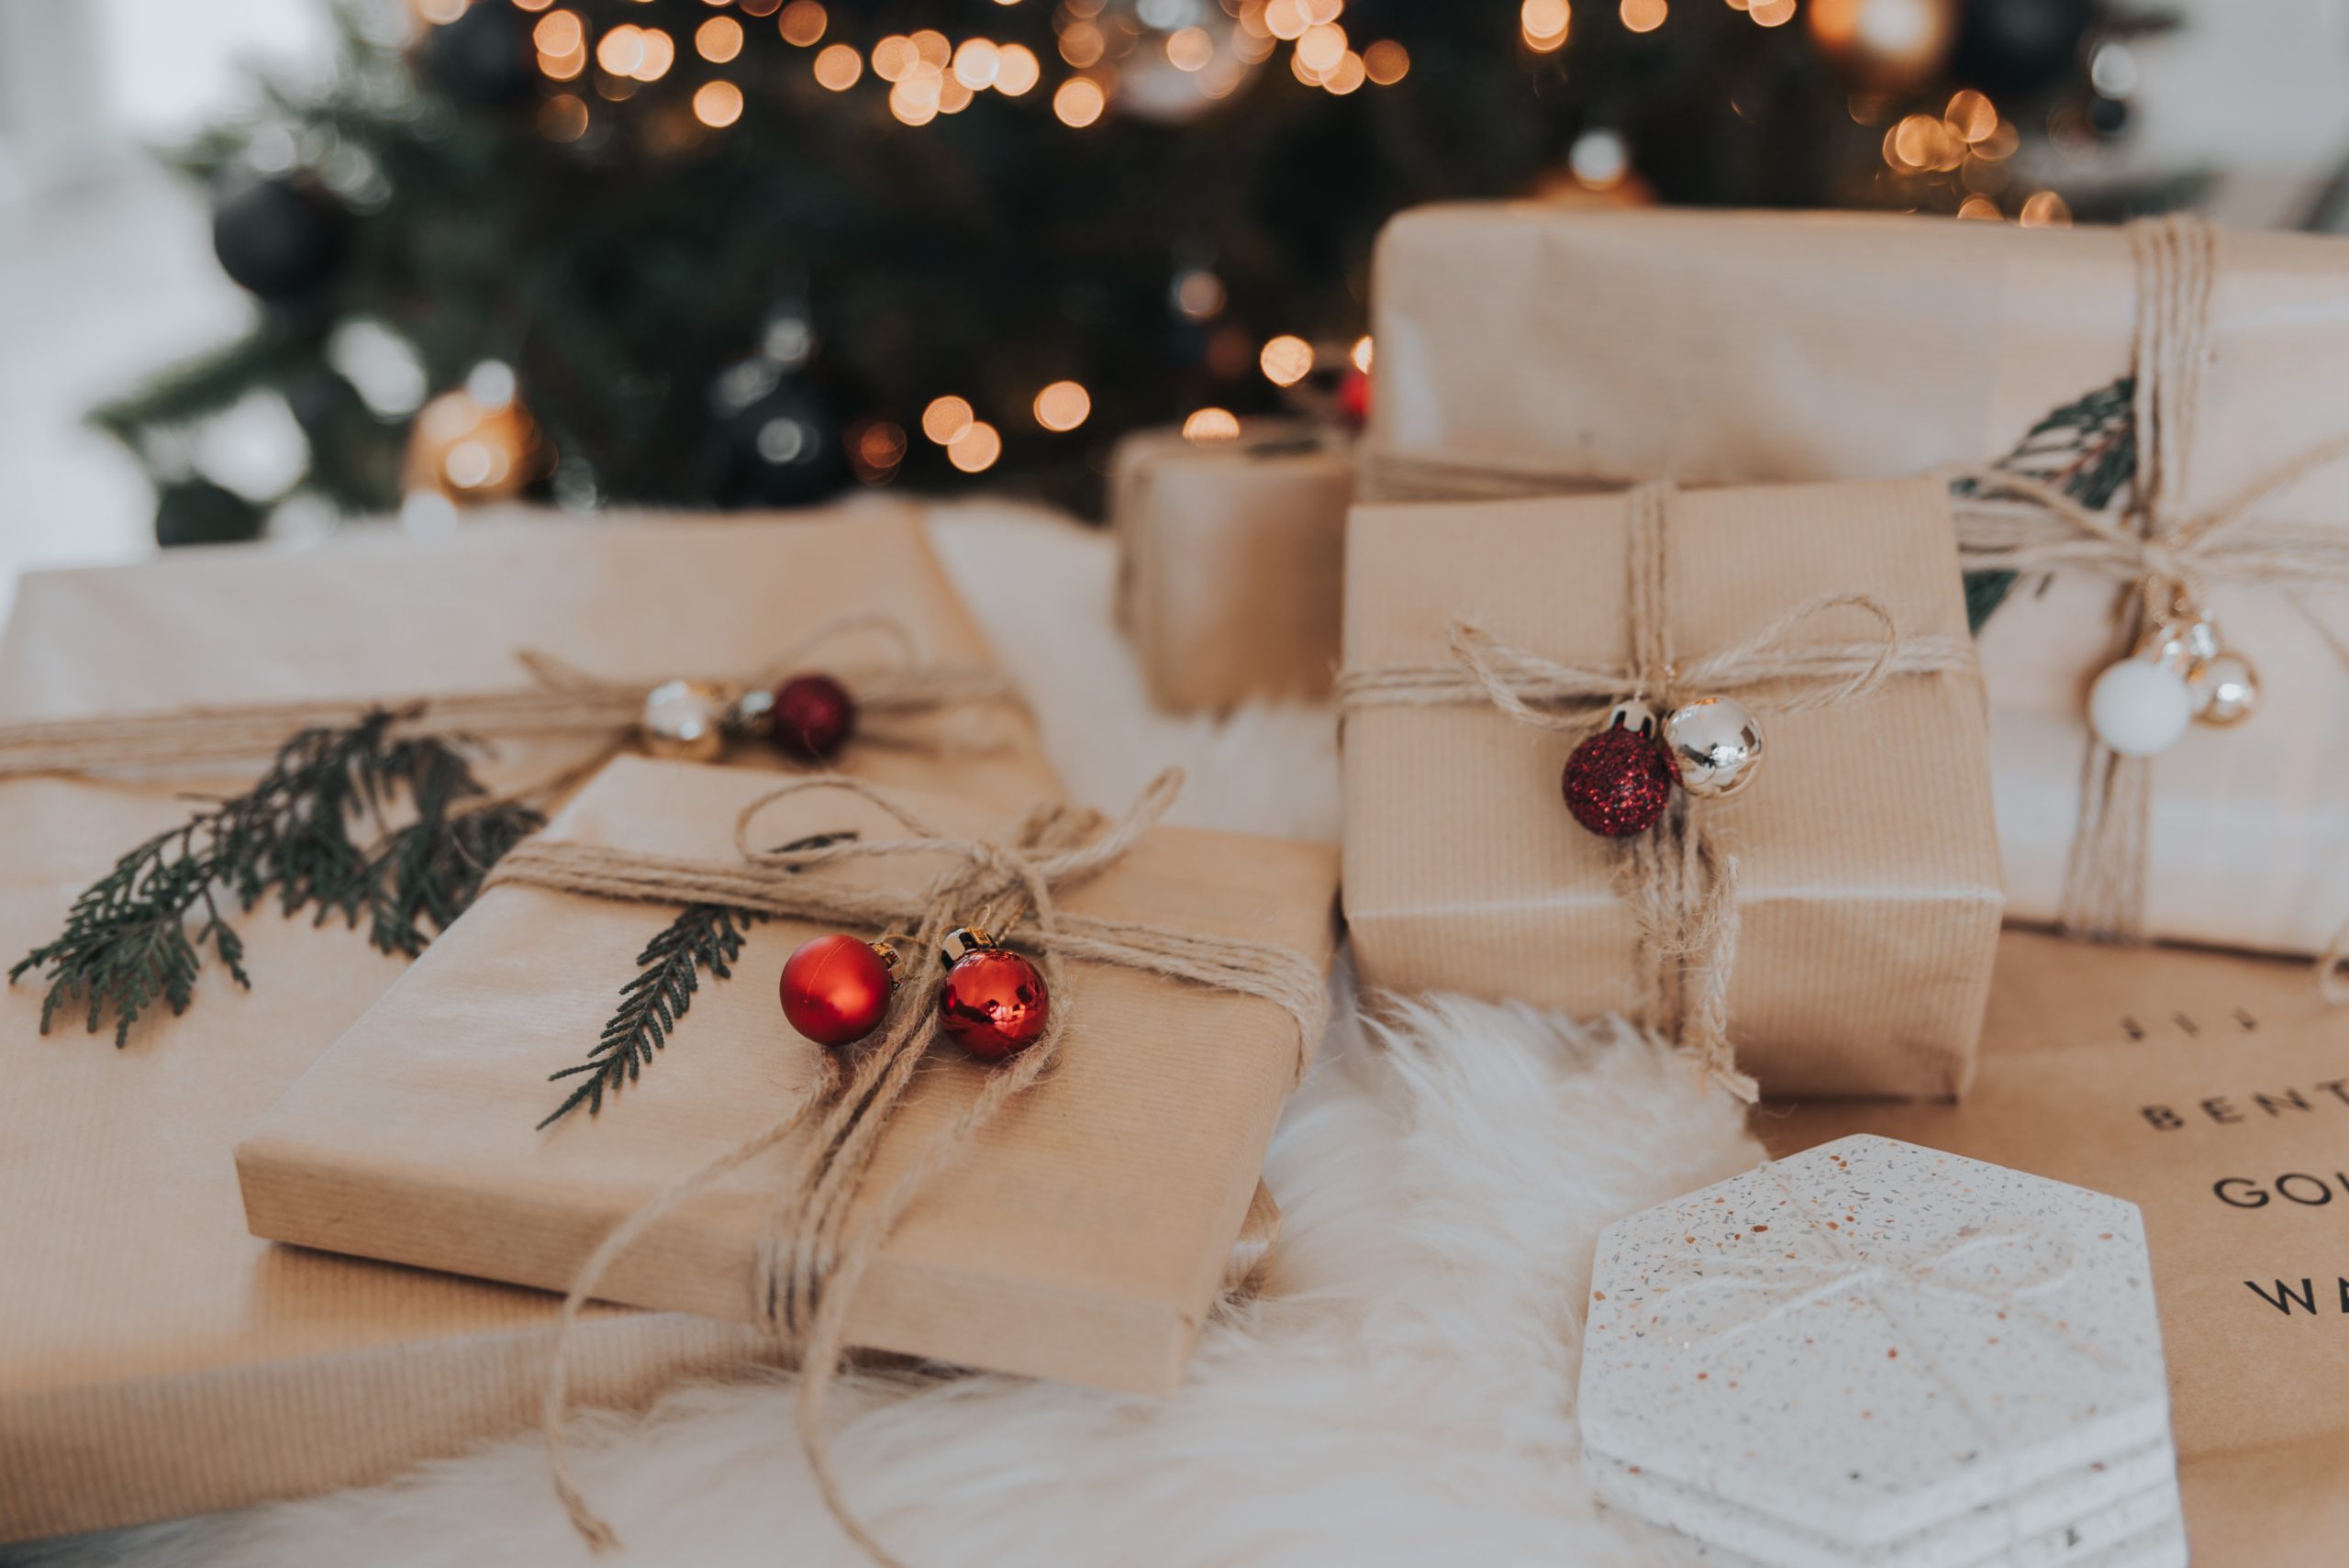 Noël : des idées cadeaux pour gâter son petit copain - Idées cadeaux